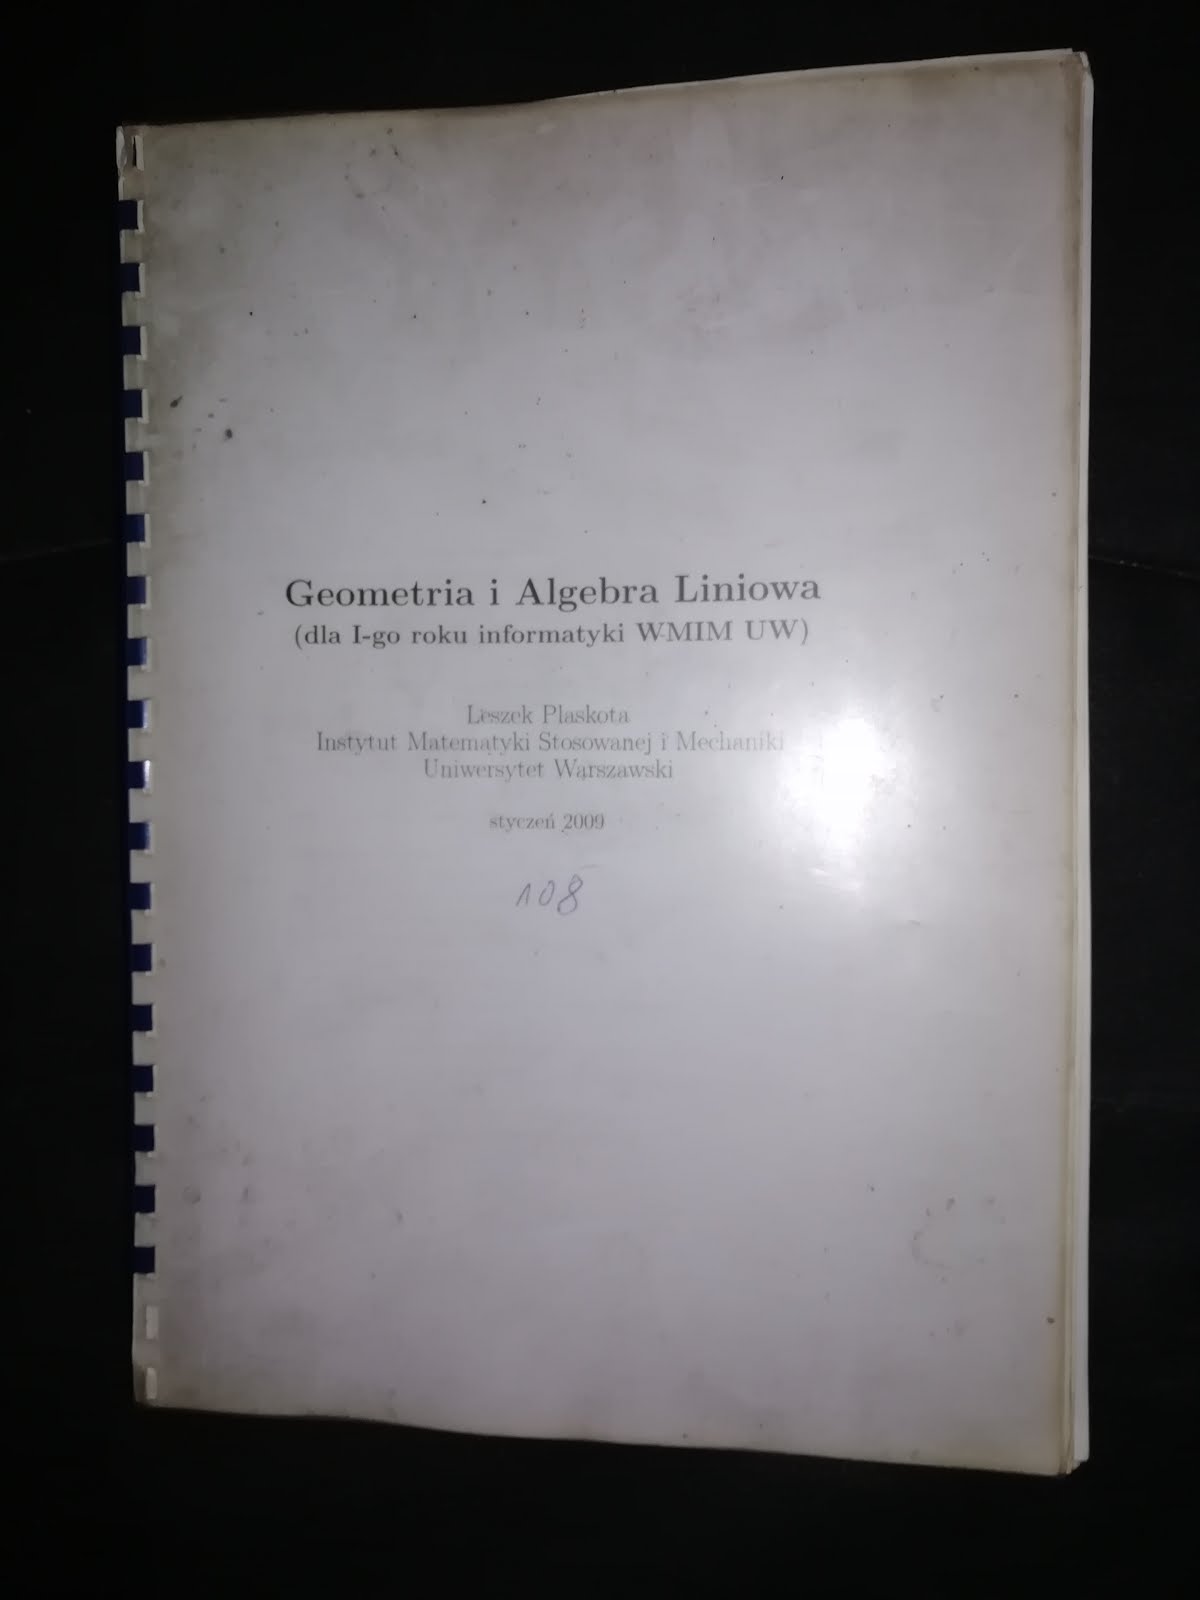 Geometry with Linear Algebra.